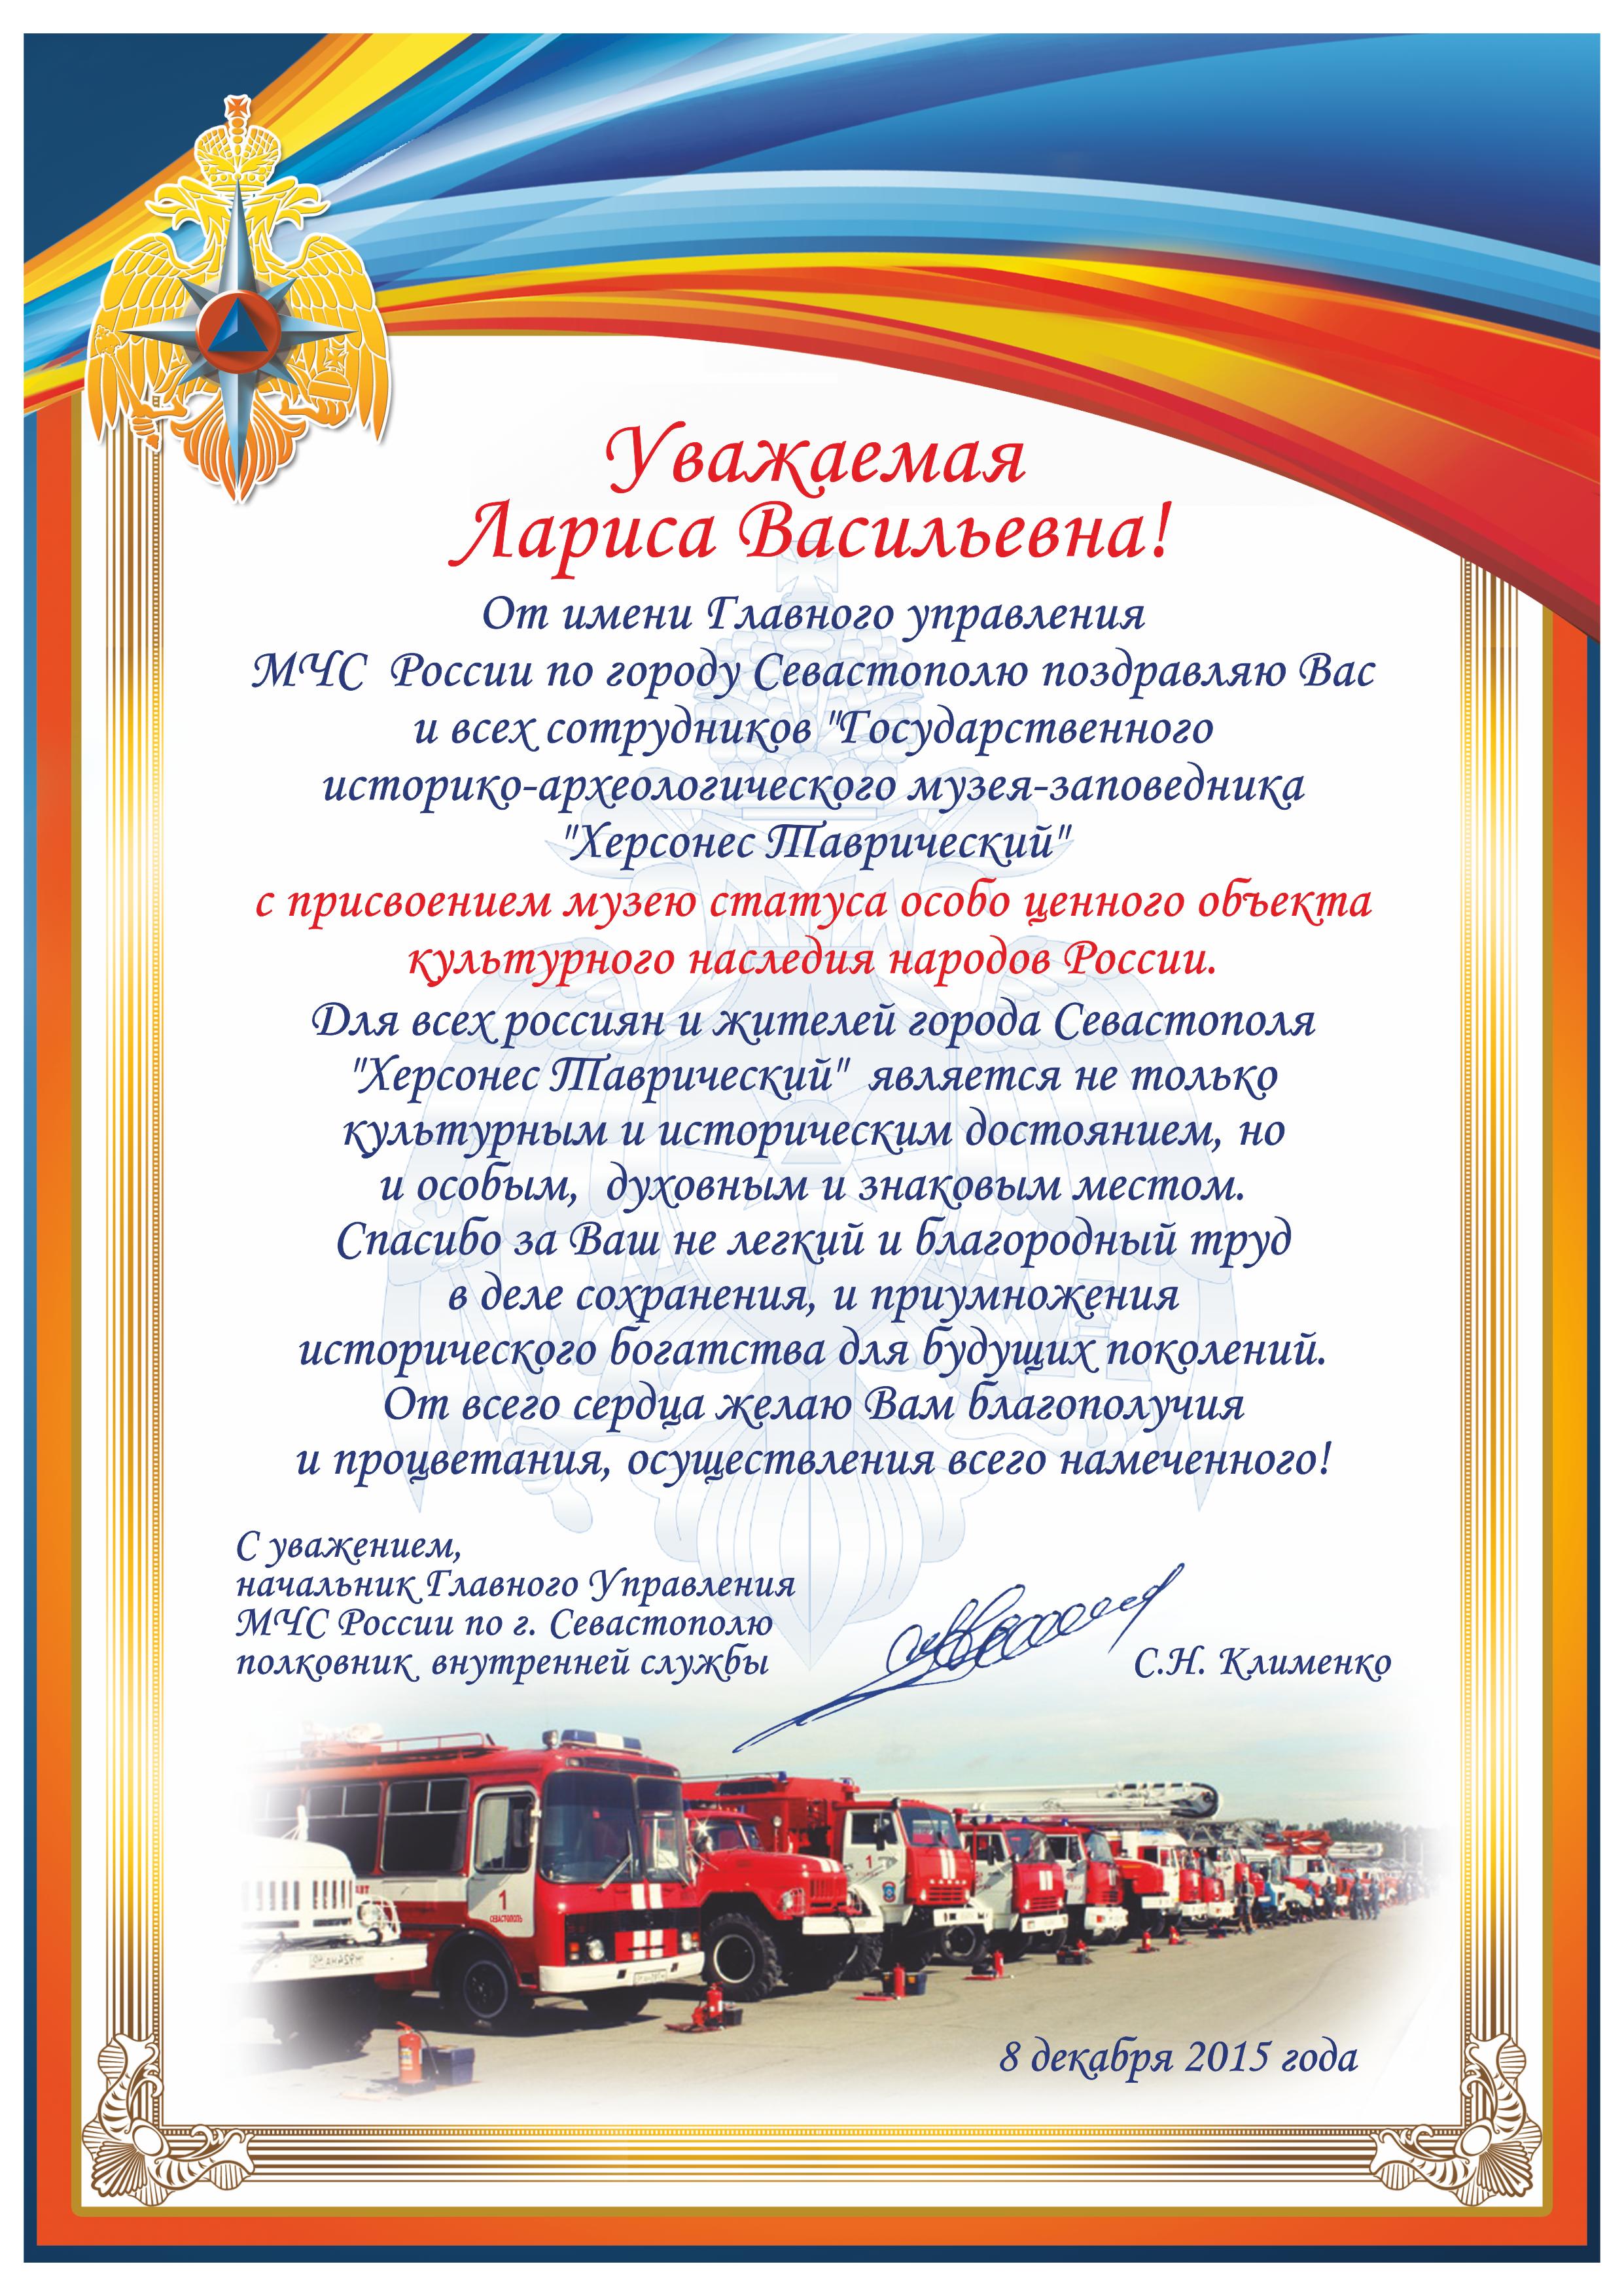 Поздравление сотрудникам заповедника от имени Главного управления МЧС России в г. Севастополе